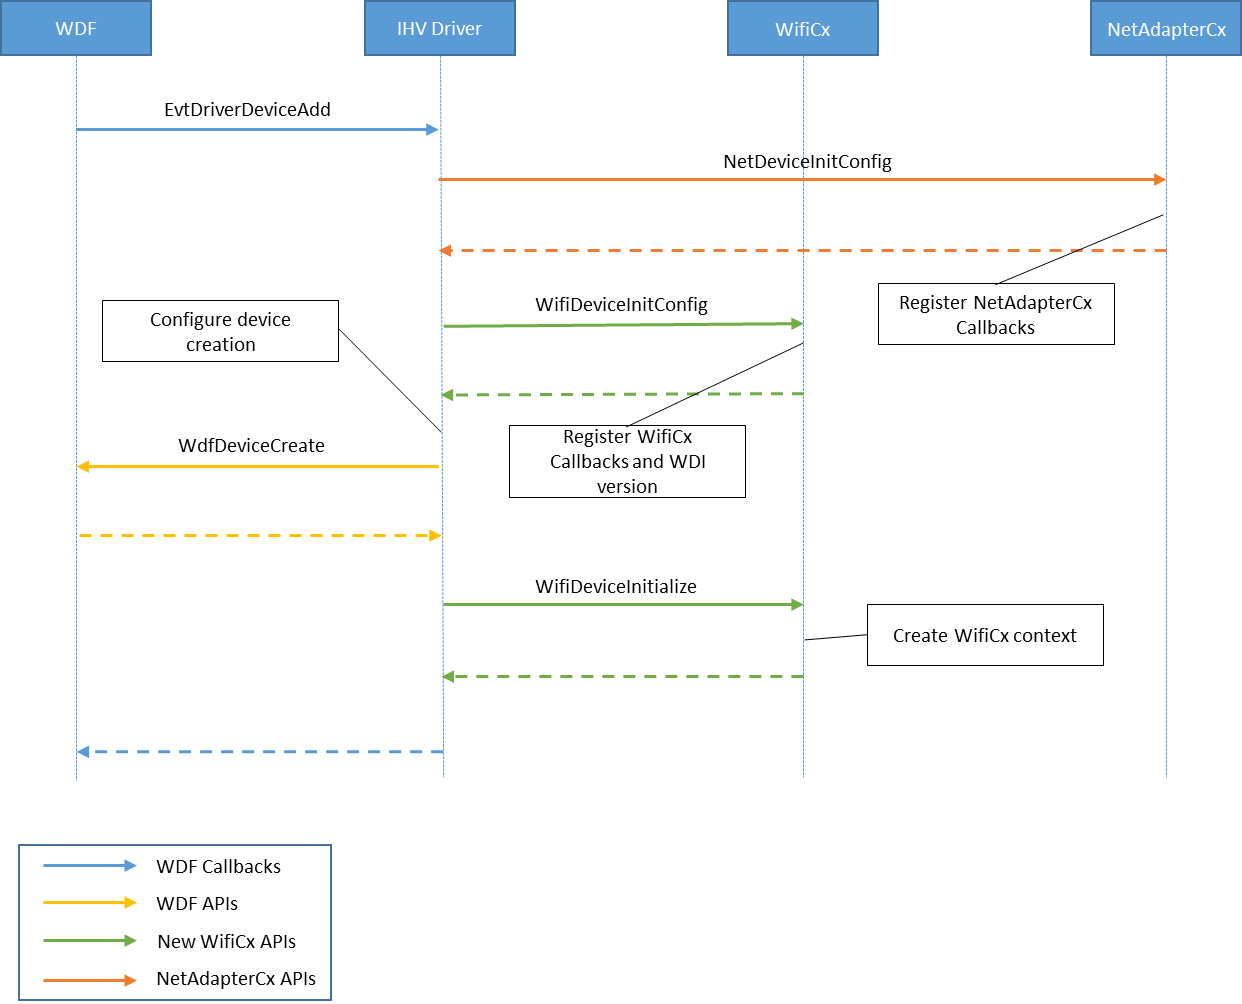 Схема, показывающая процесс инициализации драйвера клиента WiFiCx.